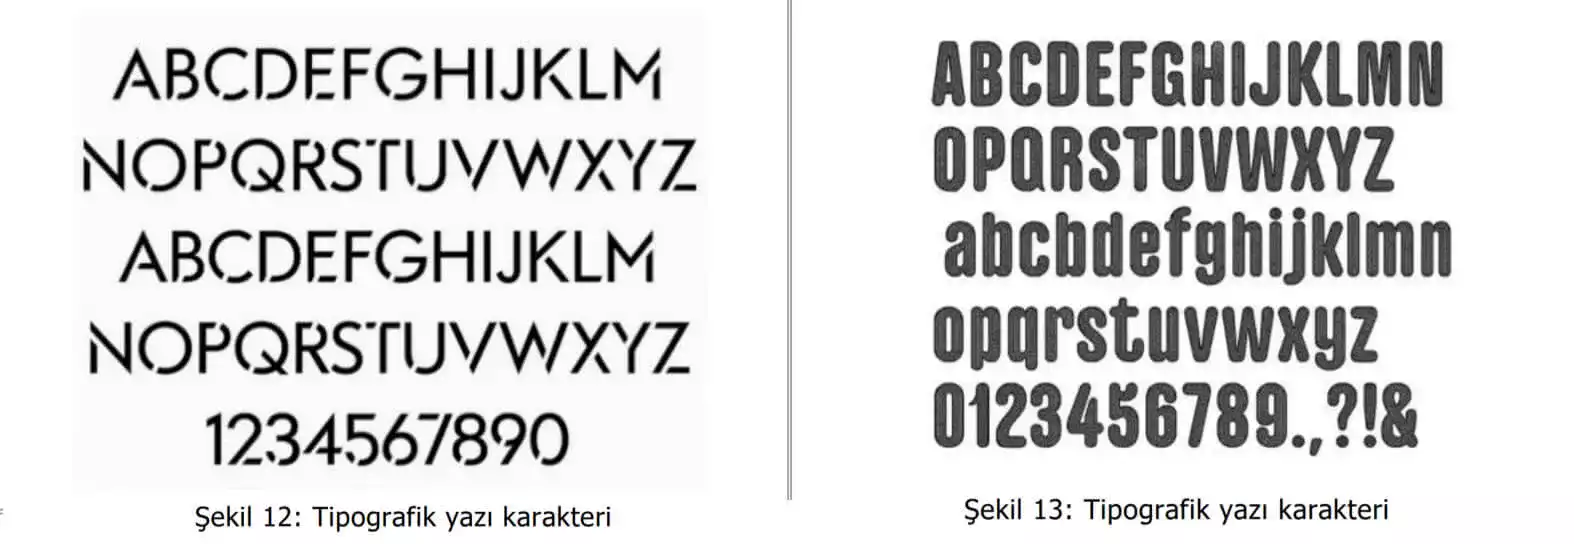 tipografik yazı karakter örnekleri-tuzla patent